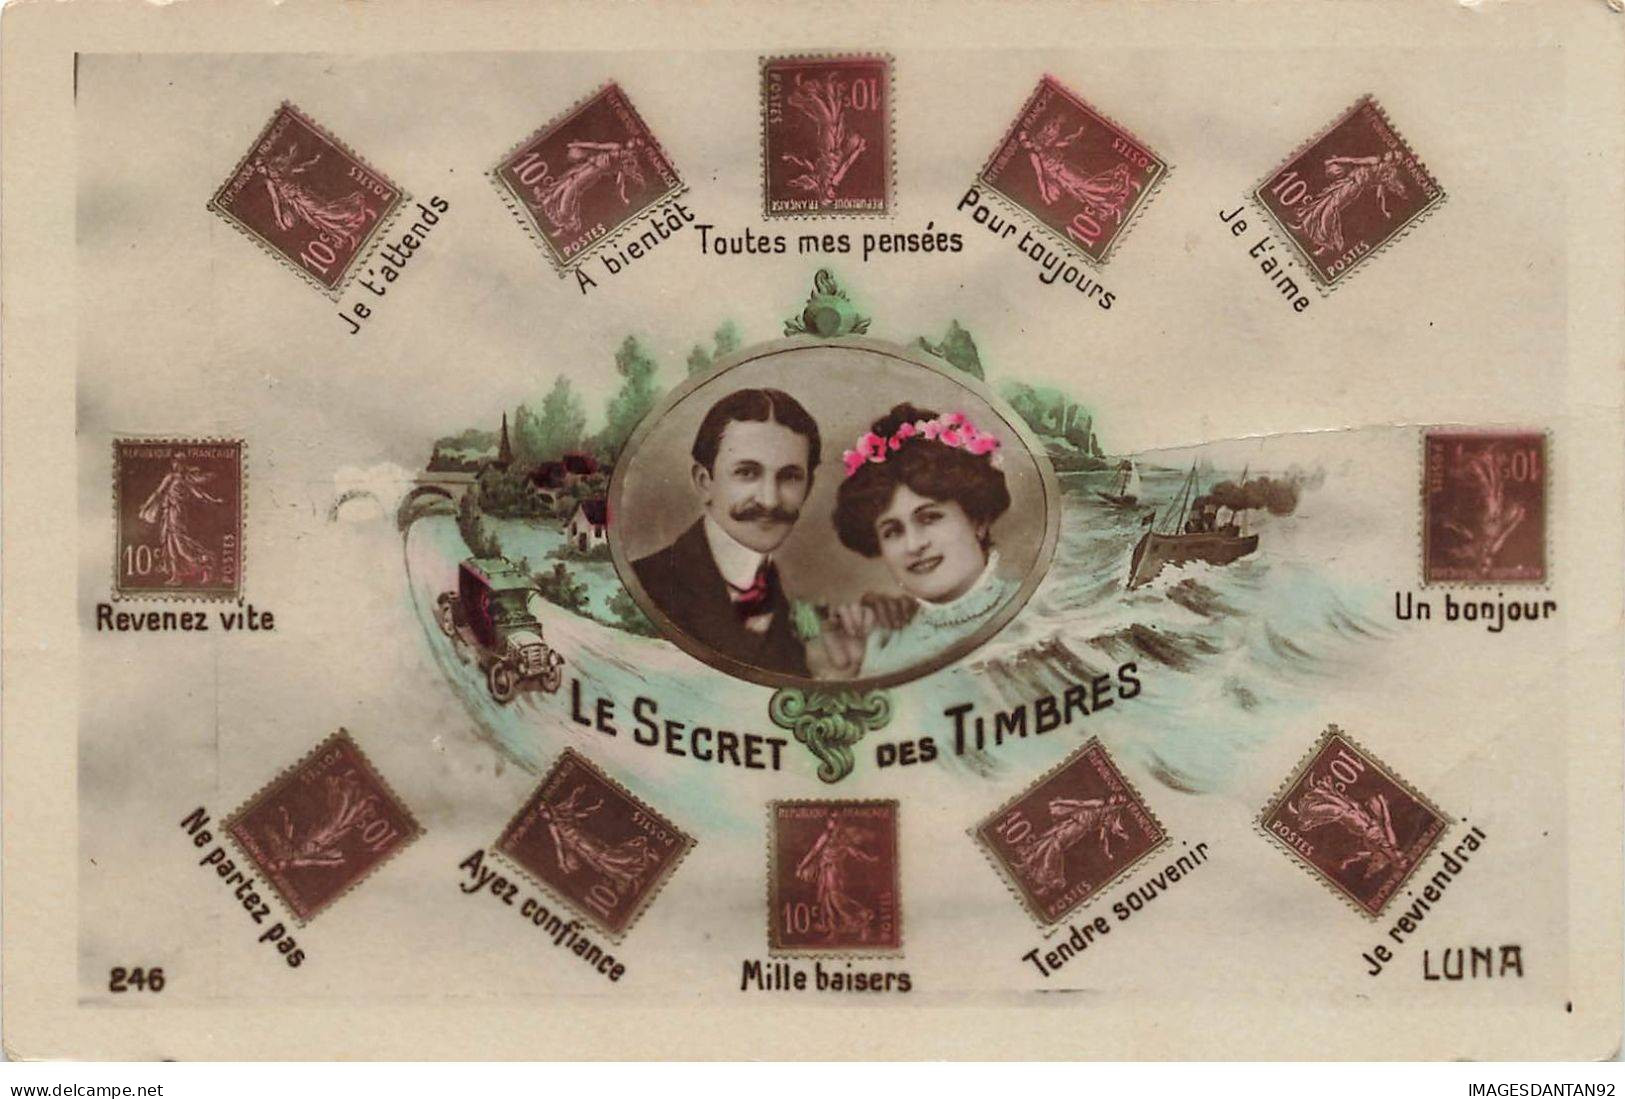 REPRESENTATION TIMBRES #MK39609 TOUTES MES PENSEES LE SECRET DES TIMBRES - Stamps (pictures)